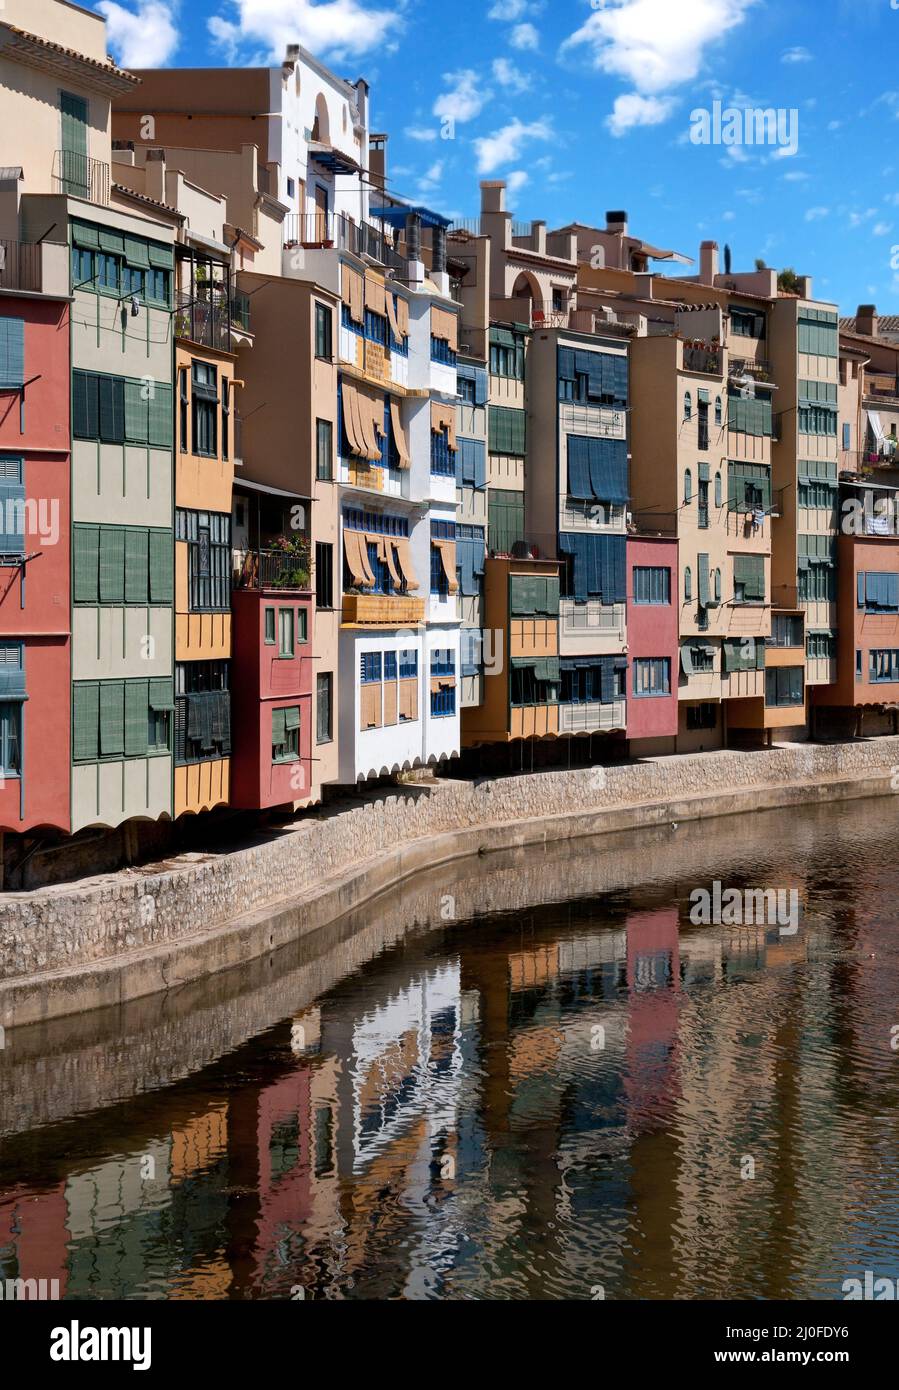 Girona cityscape, Spain Stock Photo